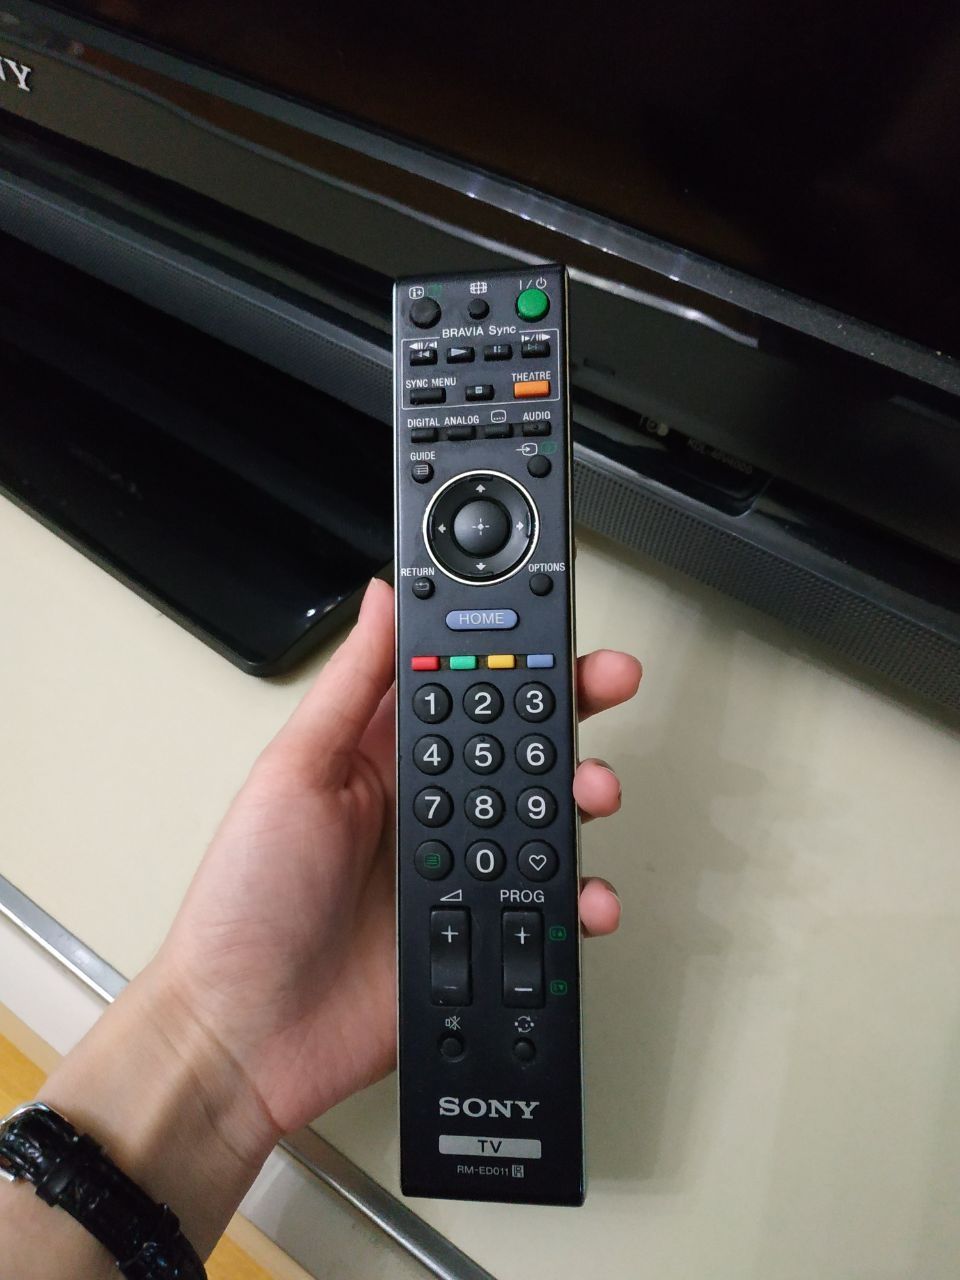 Телевізор плаский Sony Bravia KDL-46V4000 телевизор с плоским экраном